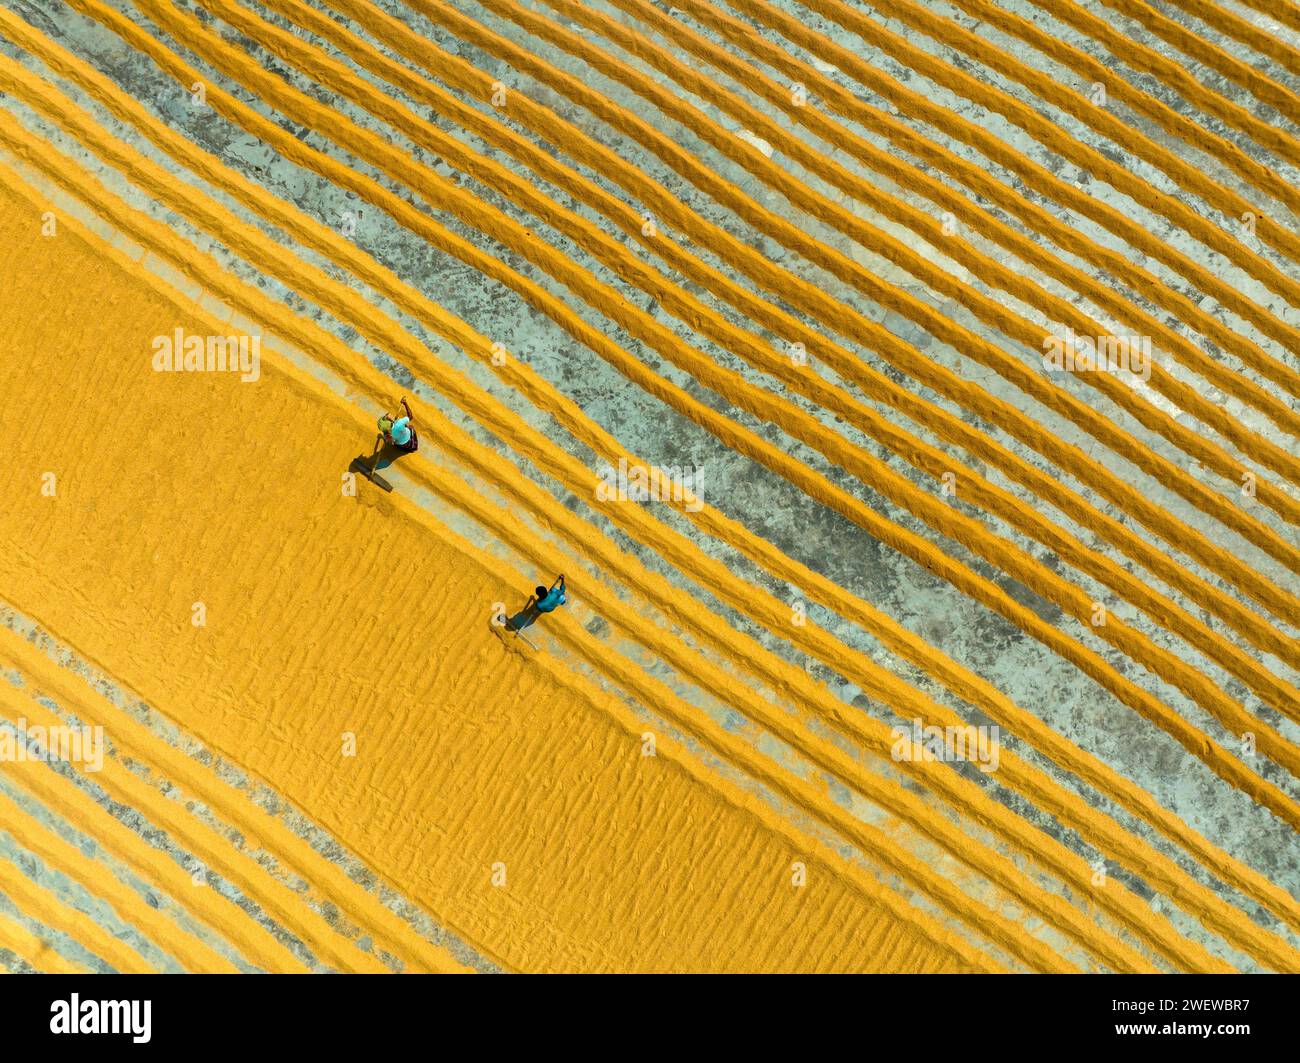 Vue aérienne de millions de grains de riz sont disposés à sécher dans un moulin alors que les travailleurs les brossent avec des feuilles sous le soleil chaud, Dhamrai, Dhaka, Bangladesh. Banque D'Images